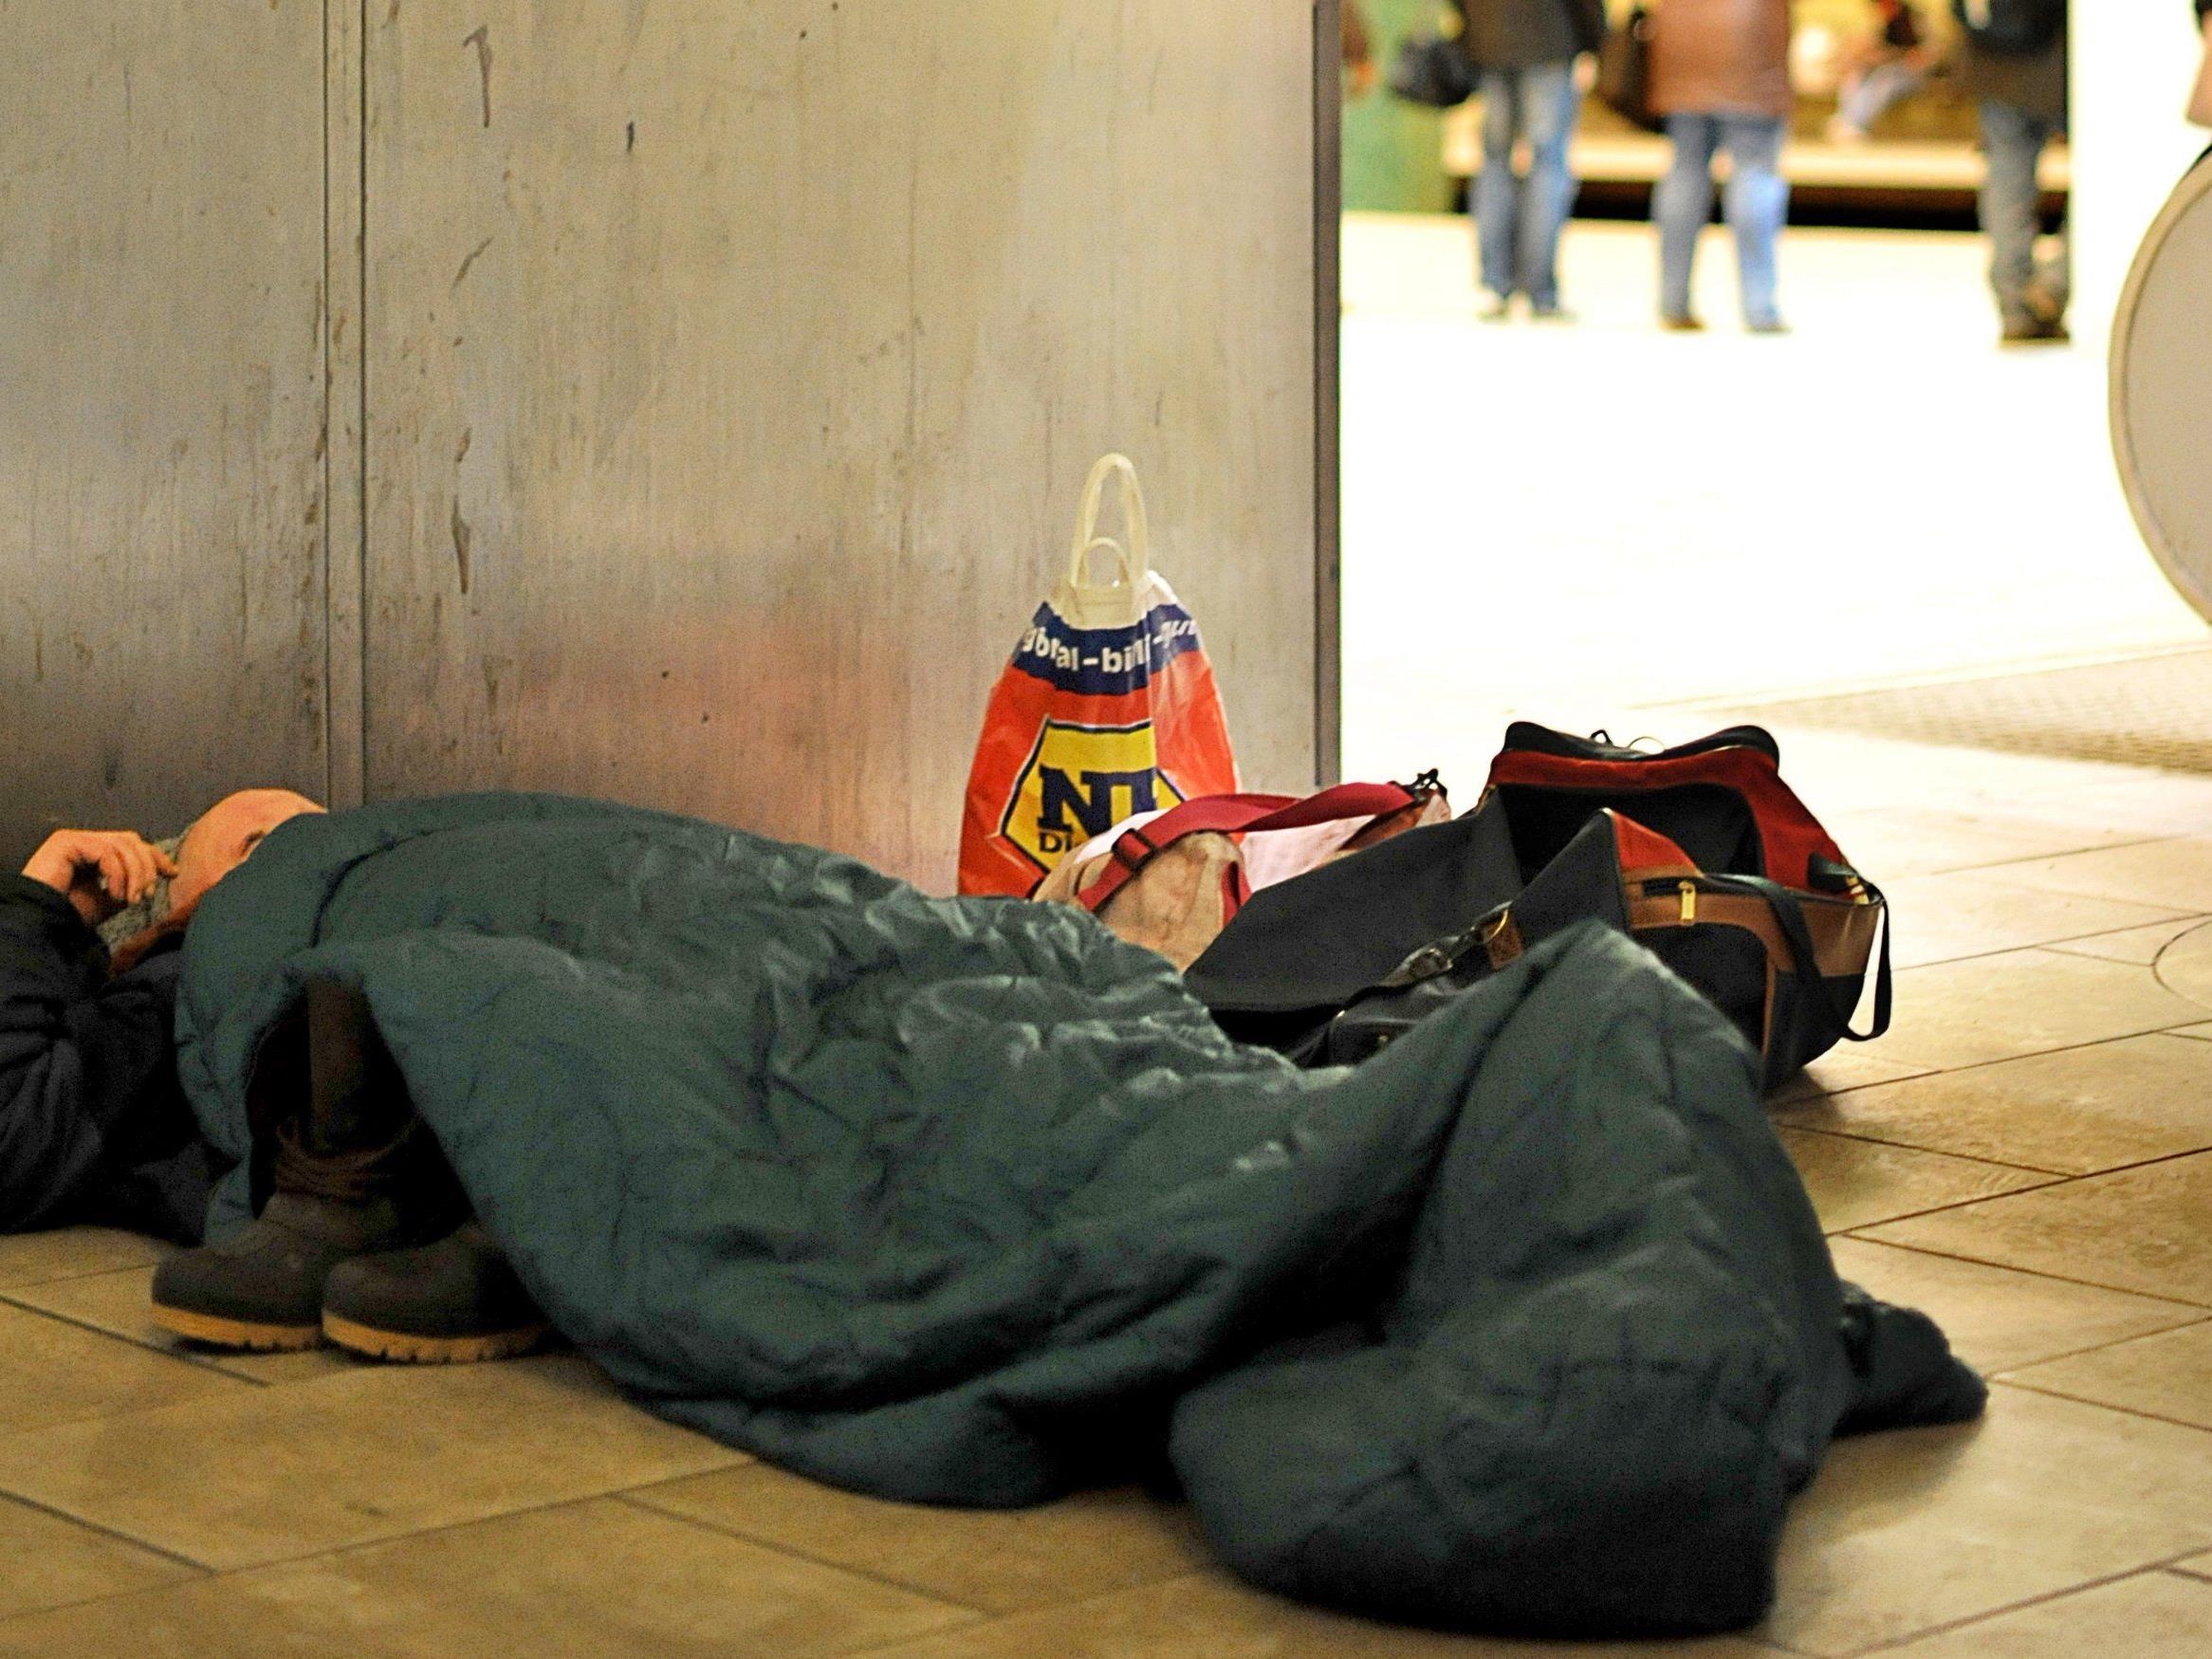 Wintereinbruch in Wien - Hilfe für Obdachlose: Leitung Caritas-Kältetelefon wieder offen